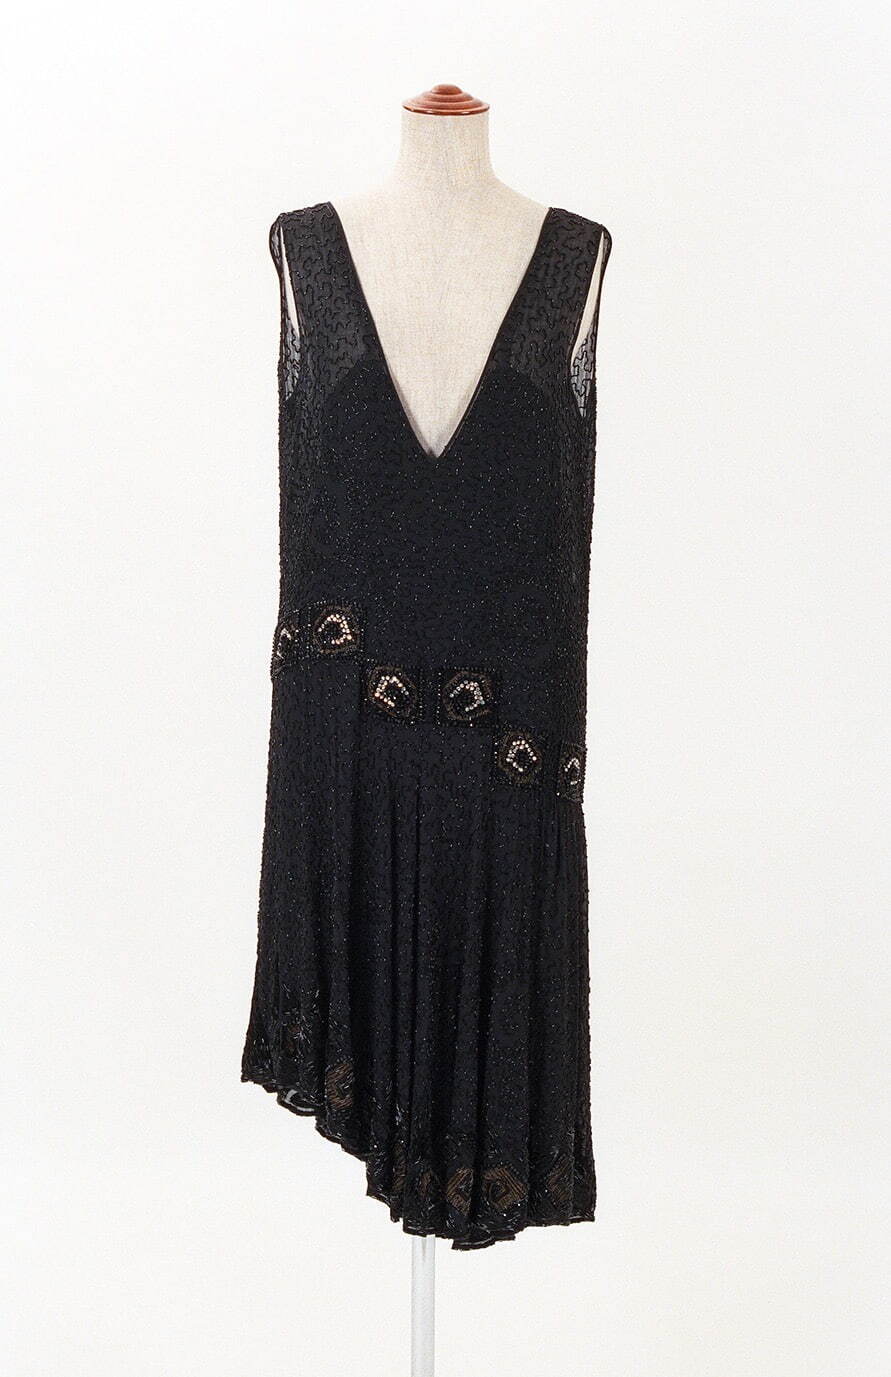 《イブニング・ドレス》 1928年頃
文化学園服飾博物館蔵